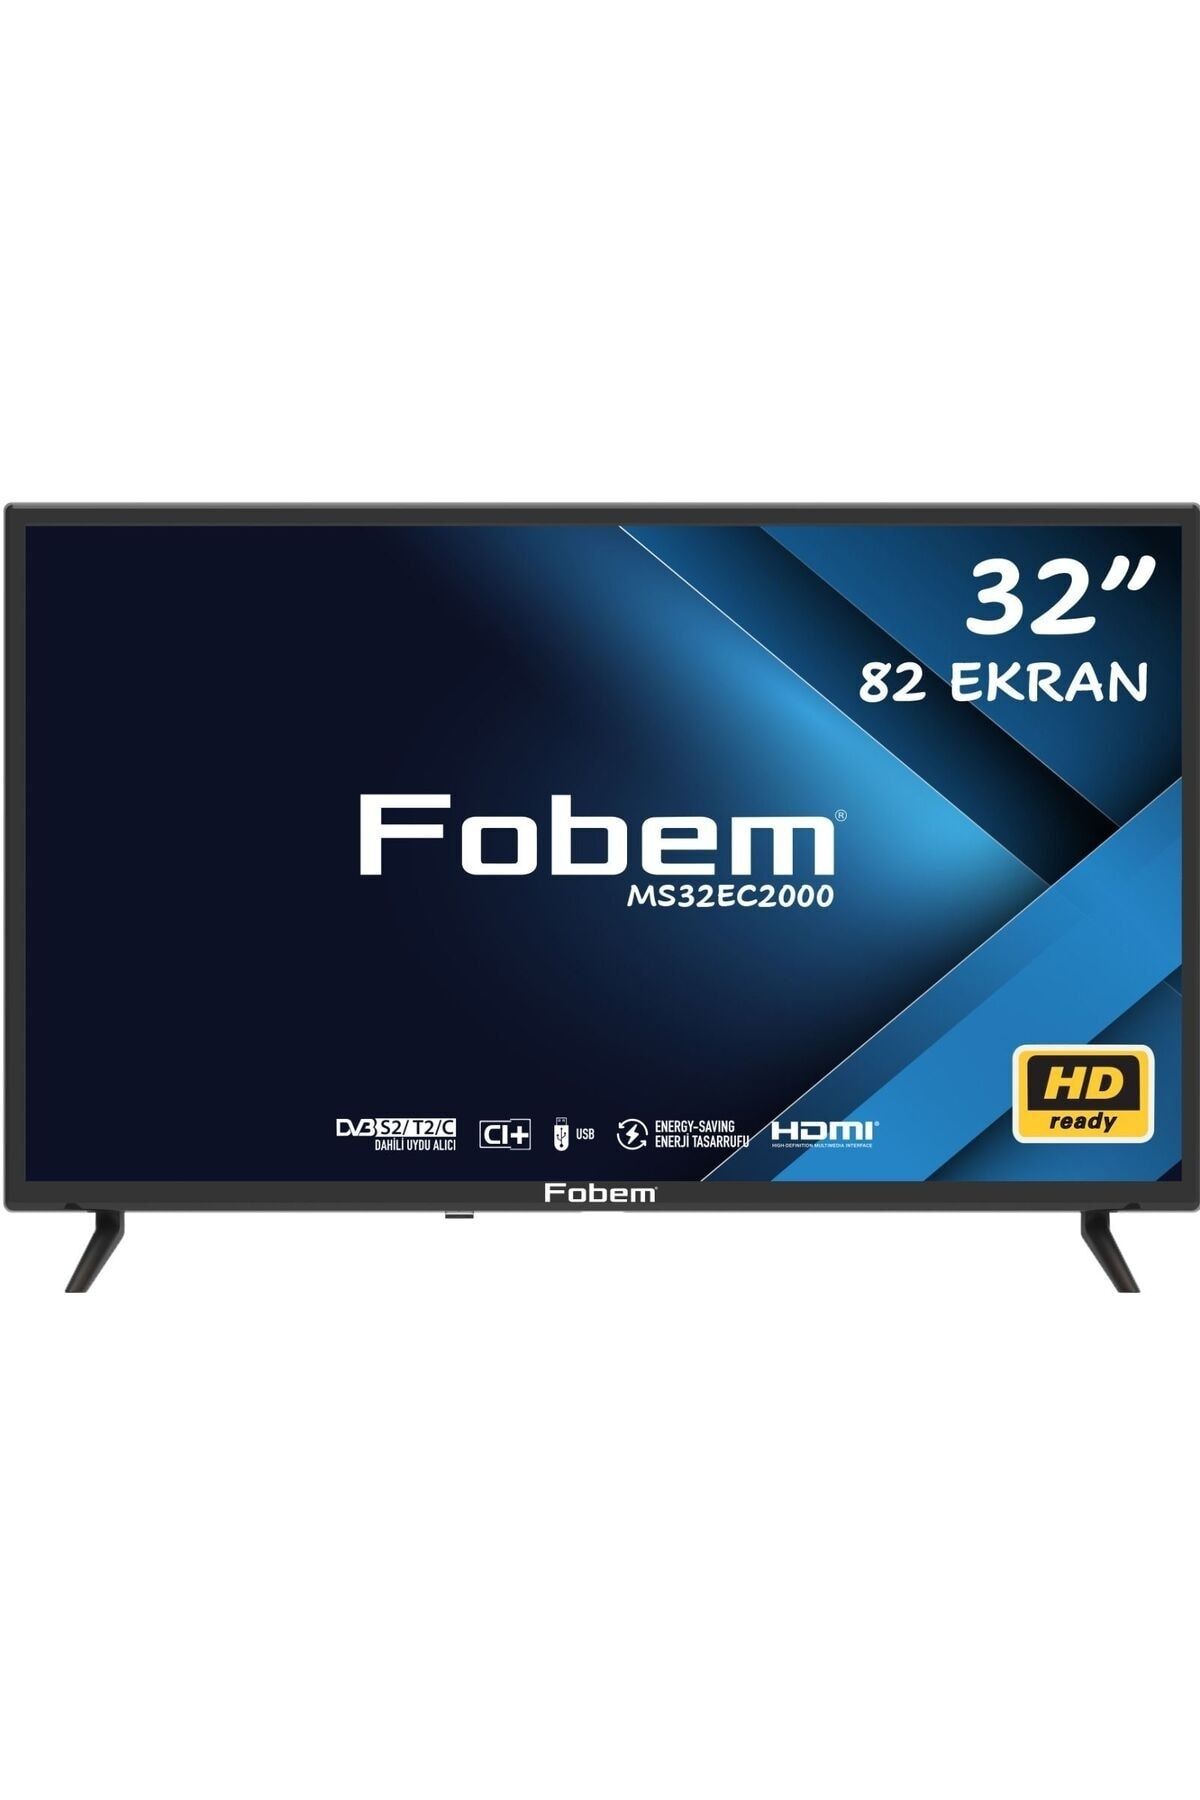 FOBEM MS32EC2000 32" 82 Ekran Uydu Alıcılı LED TV